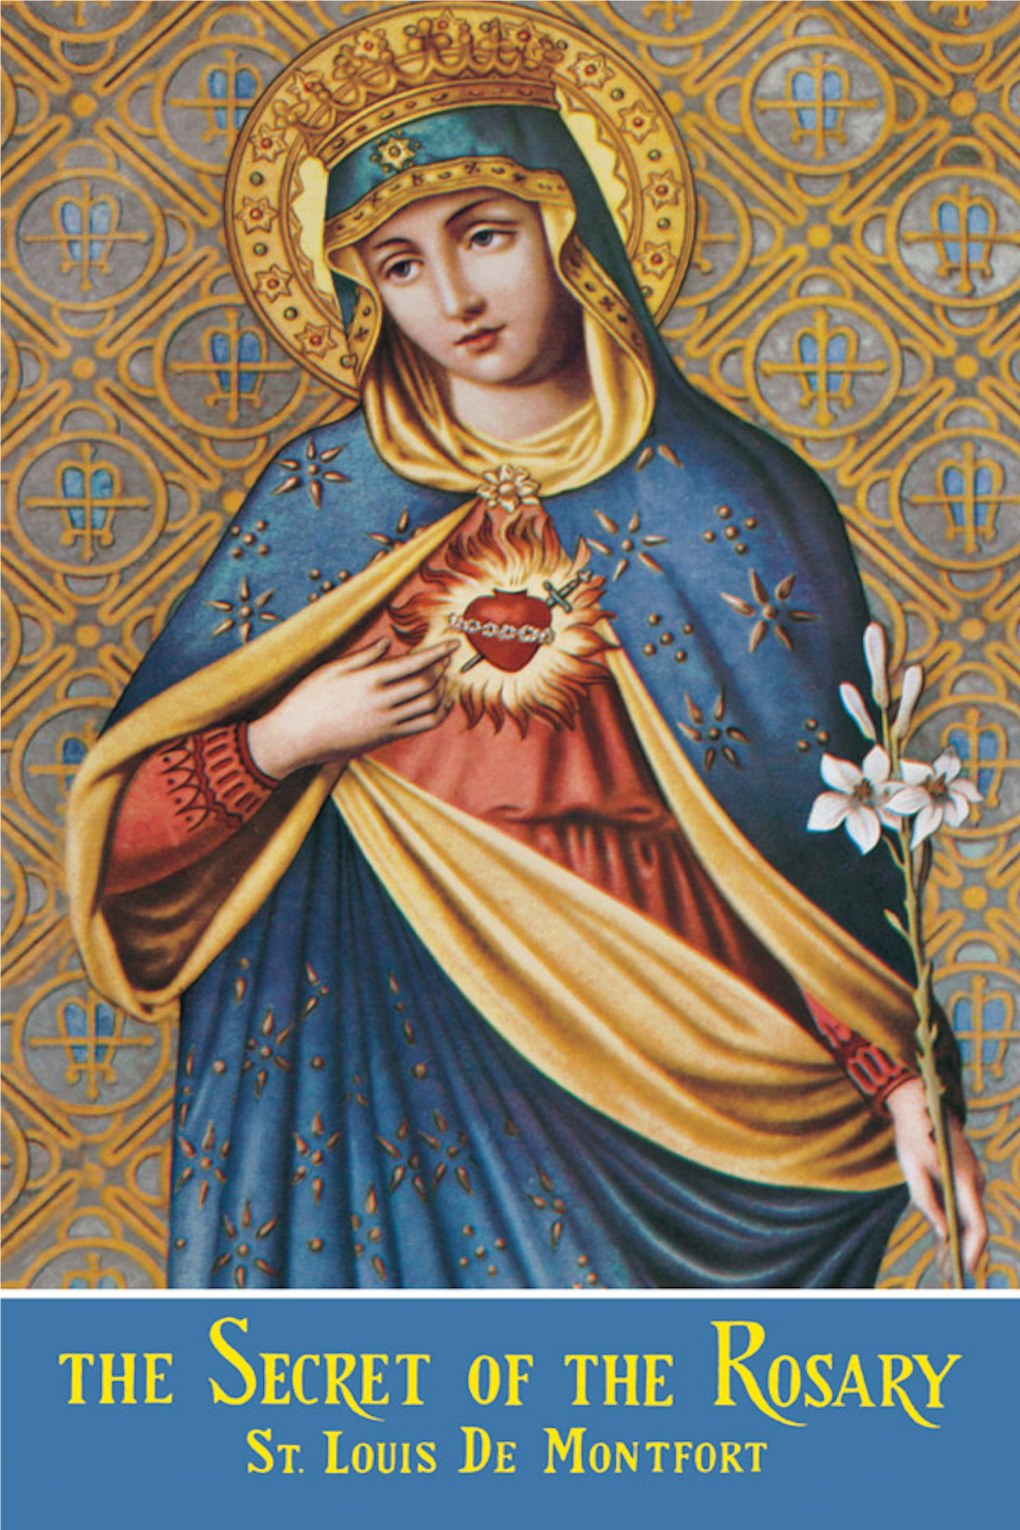 "The Secret of the Rosary," by St. Louis De Montfort